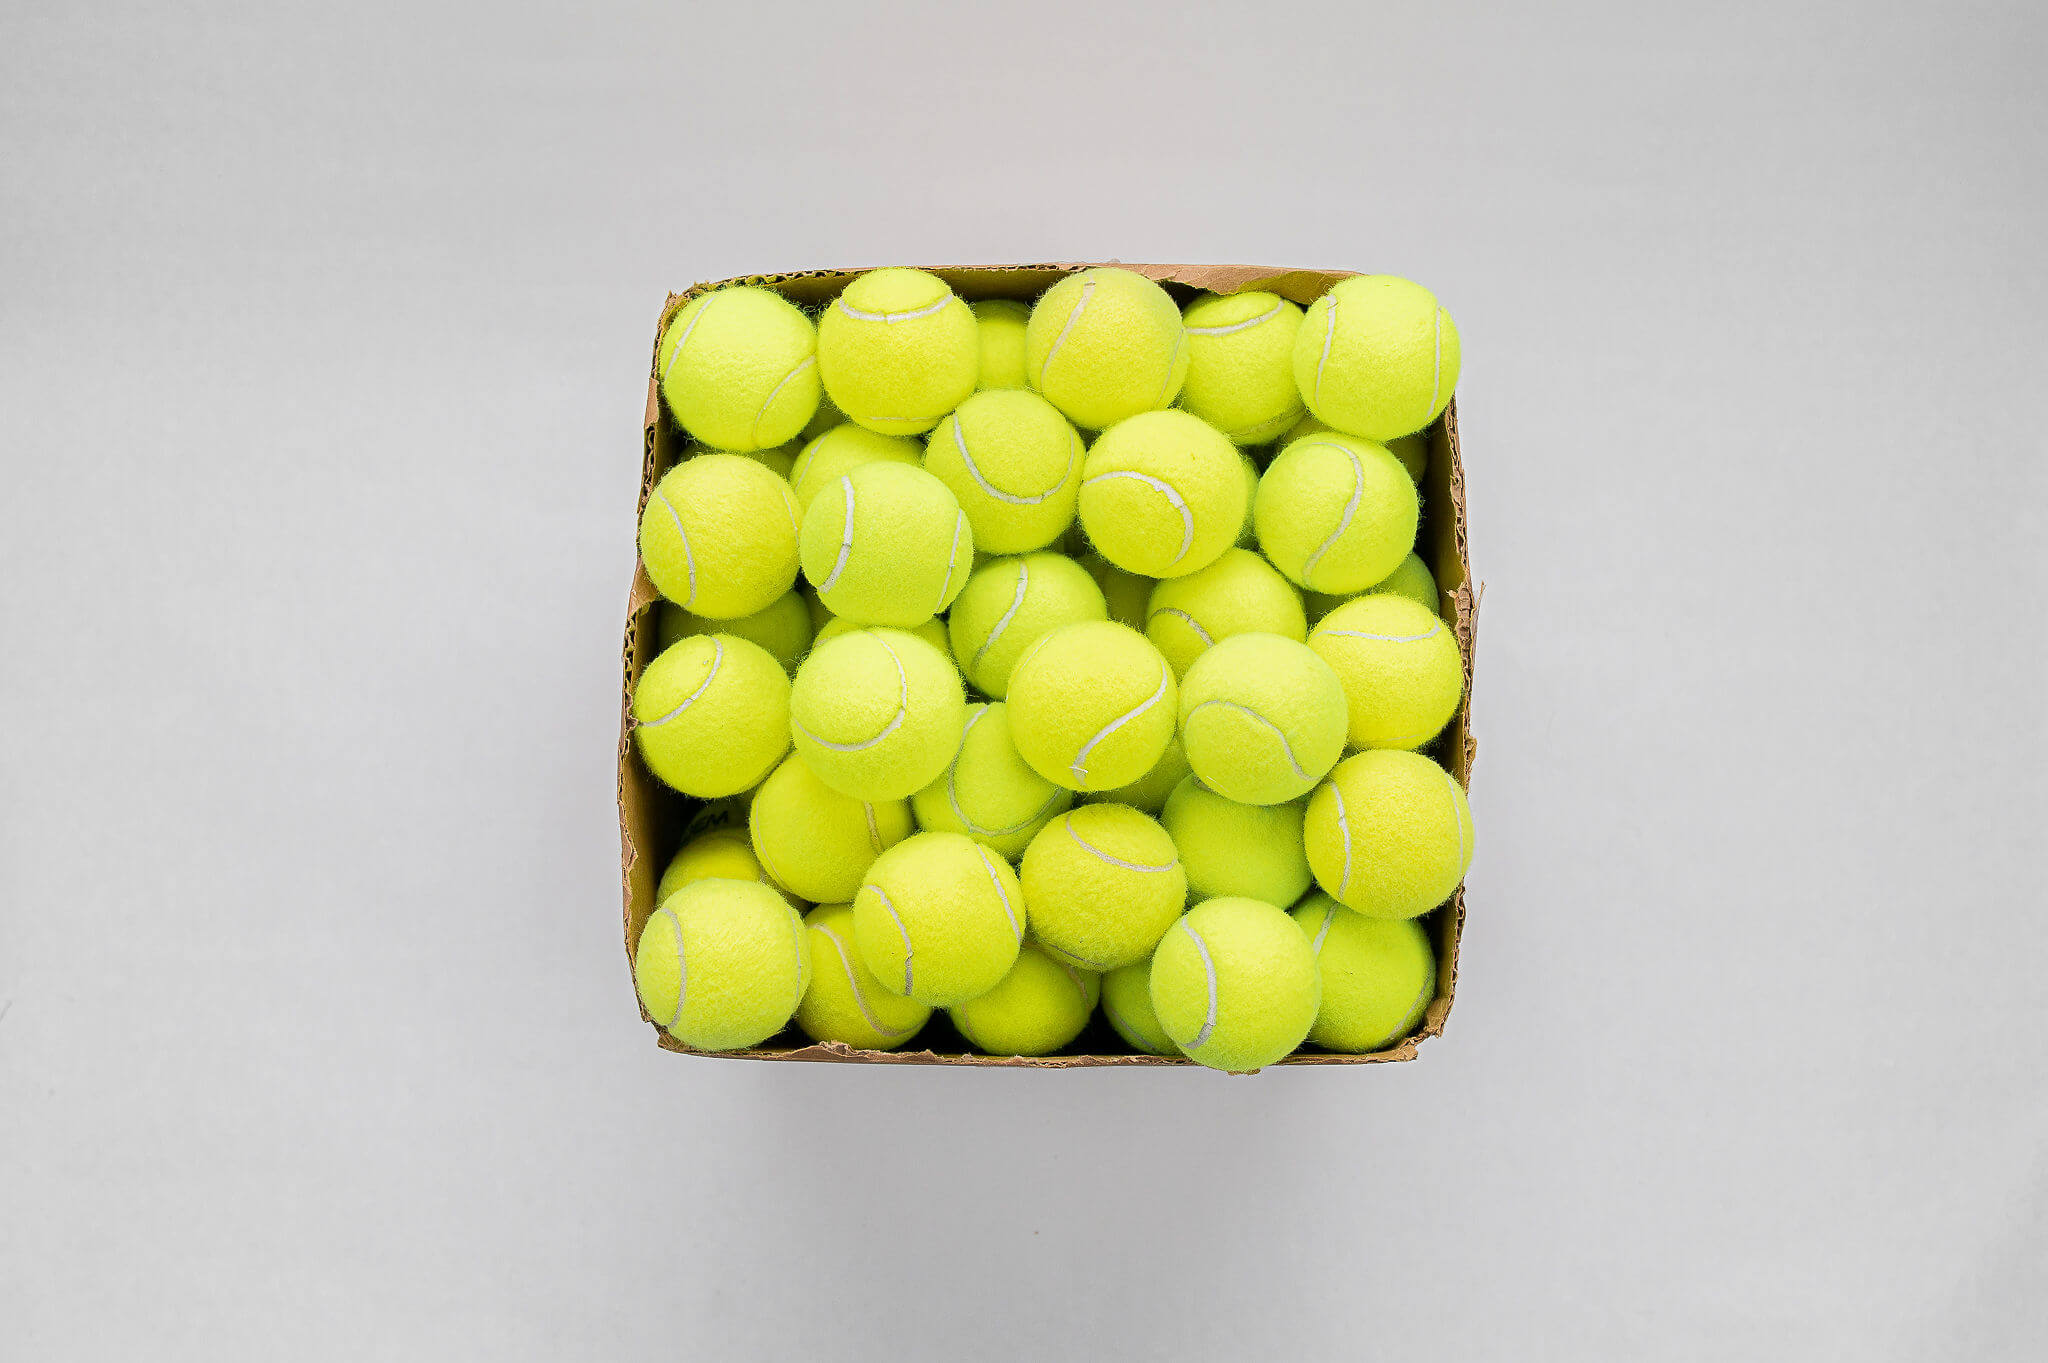 Second Throw Cheap Bulk Tennis Balls For Dogs